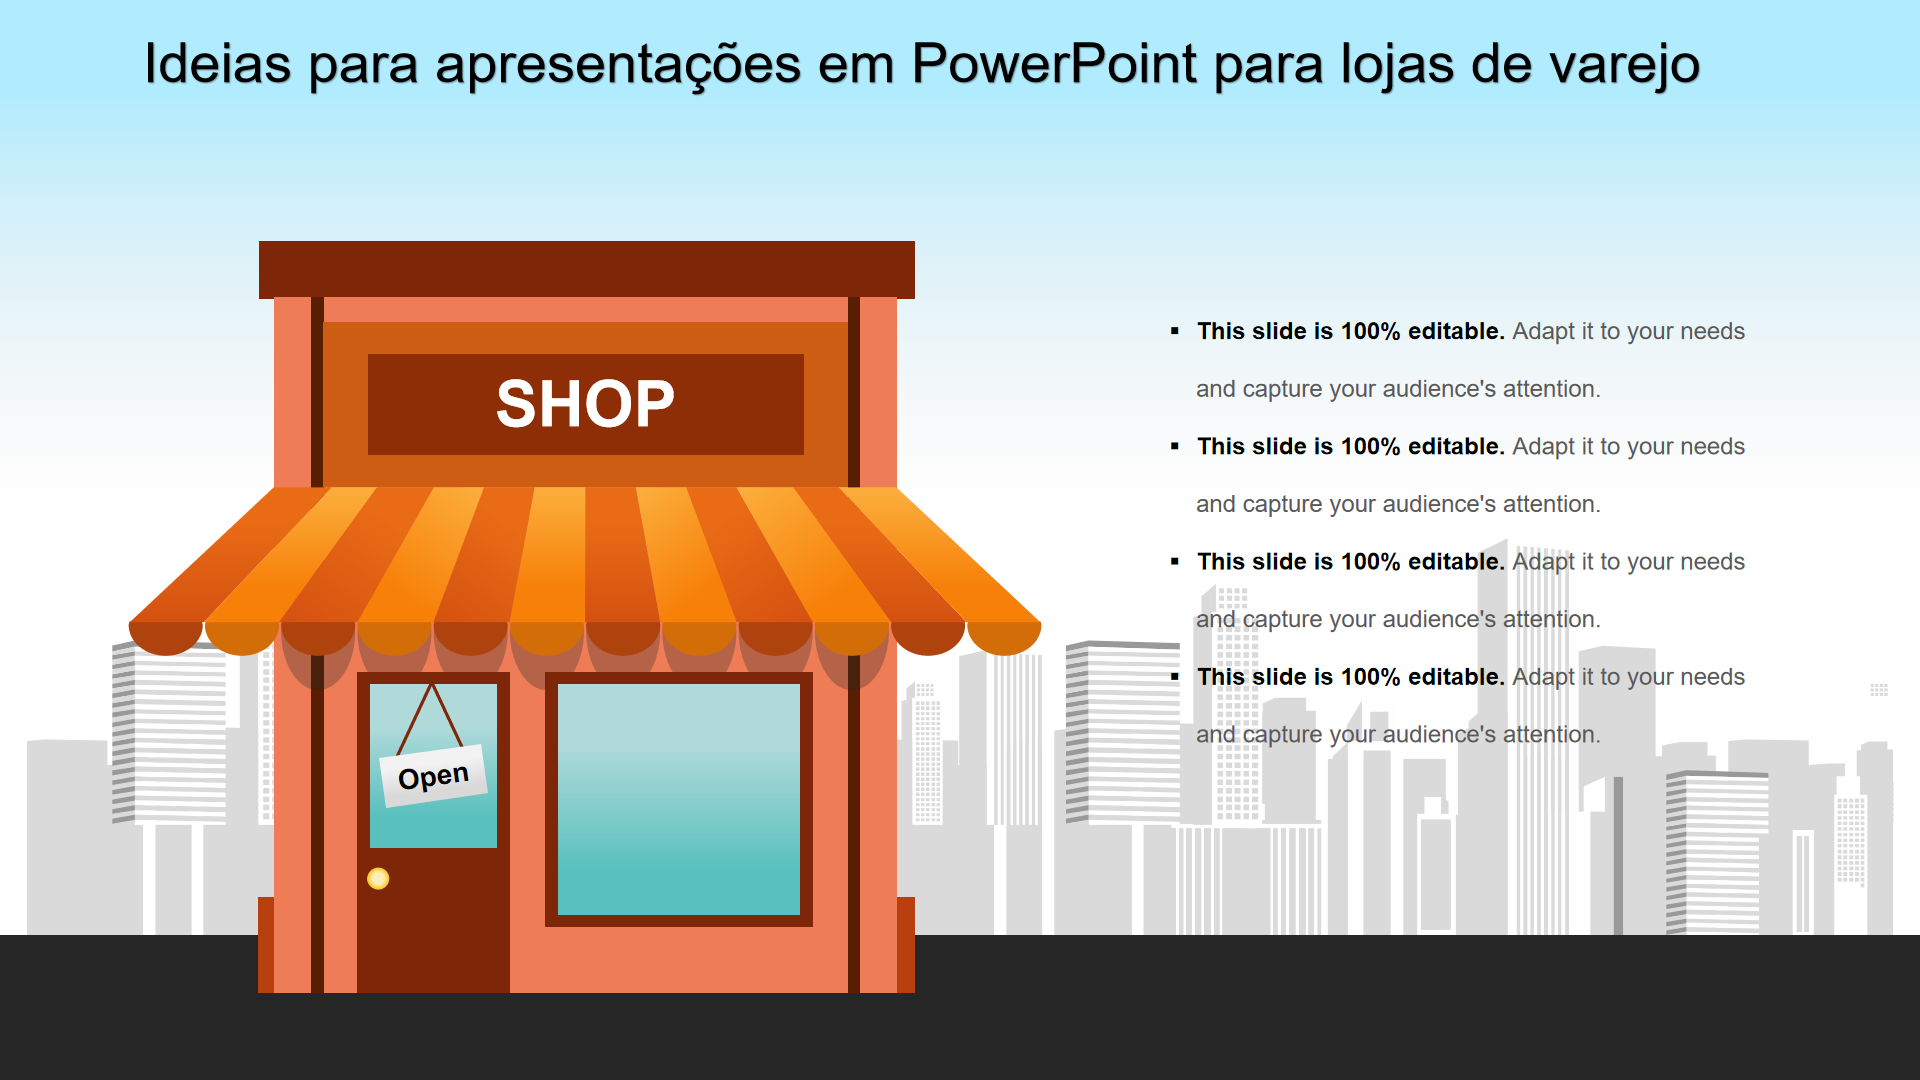 Ideias para apresentações em PowerPoint para lojas de varejo